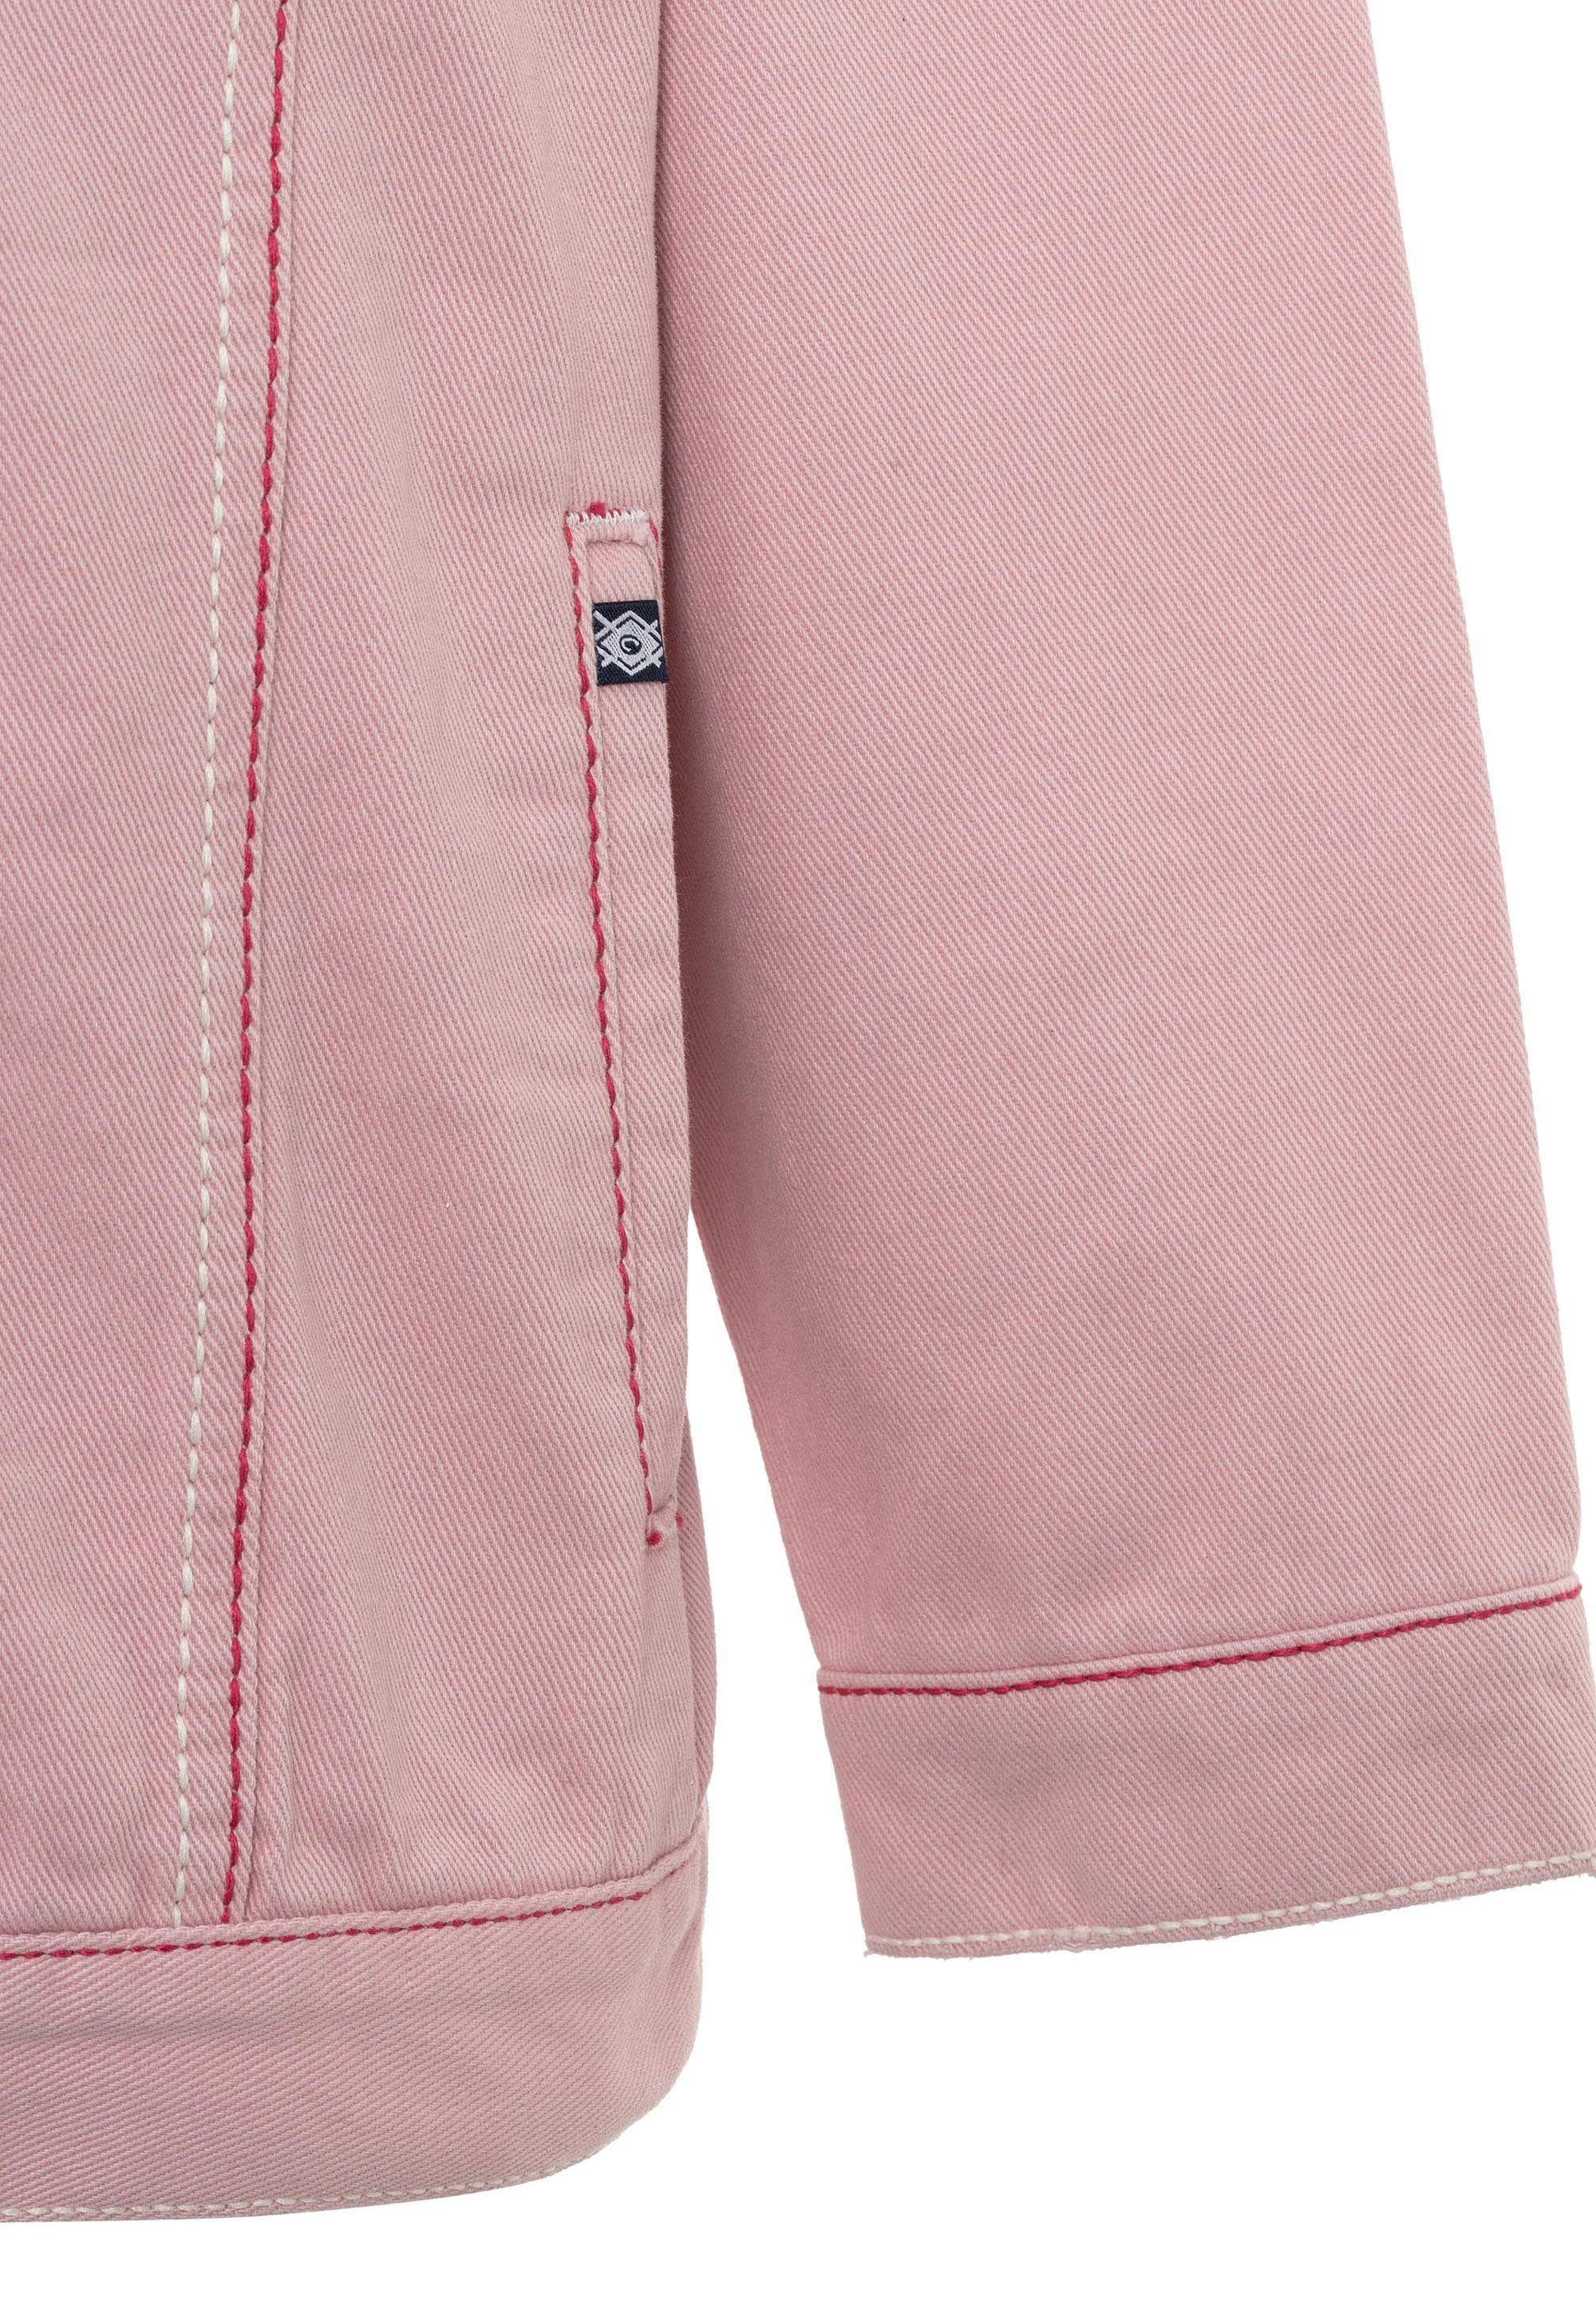 Jeansjacke modernem rosa & Look in Baxx Cipo